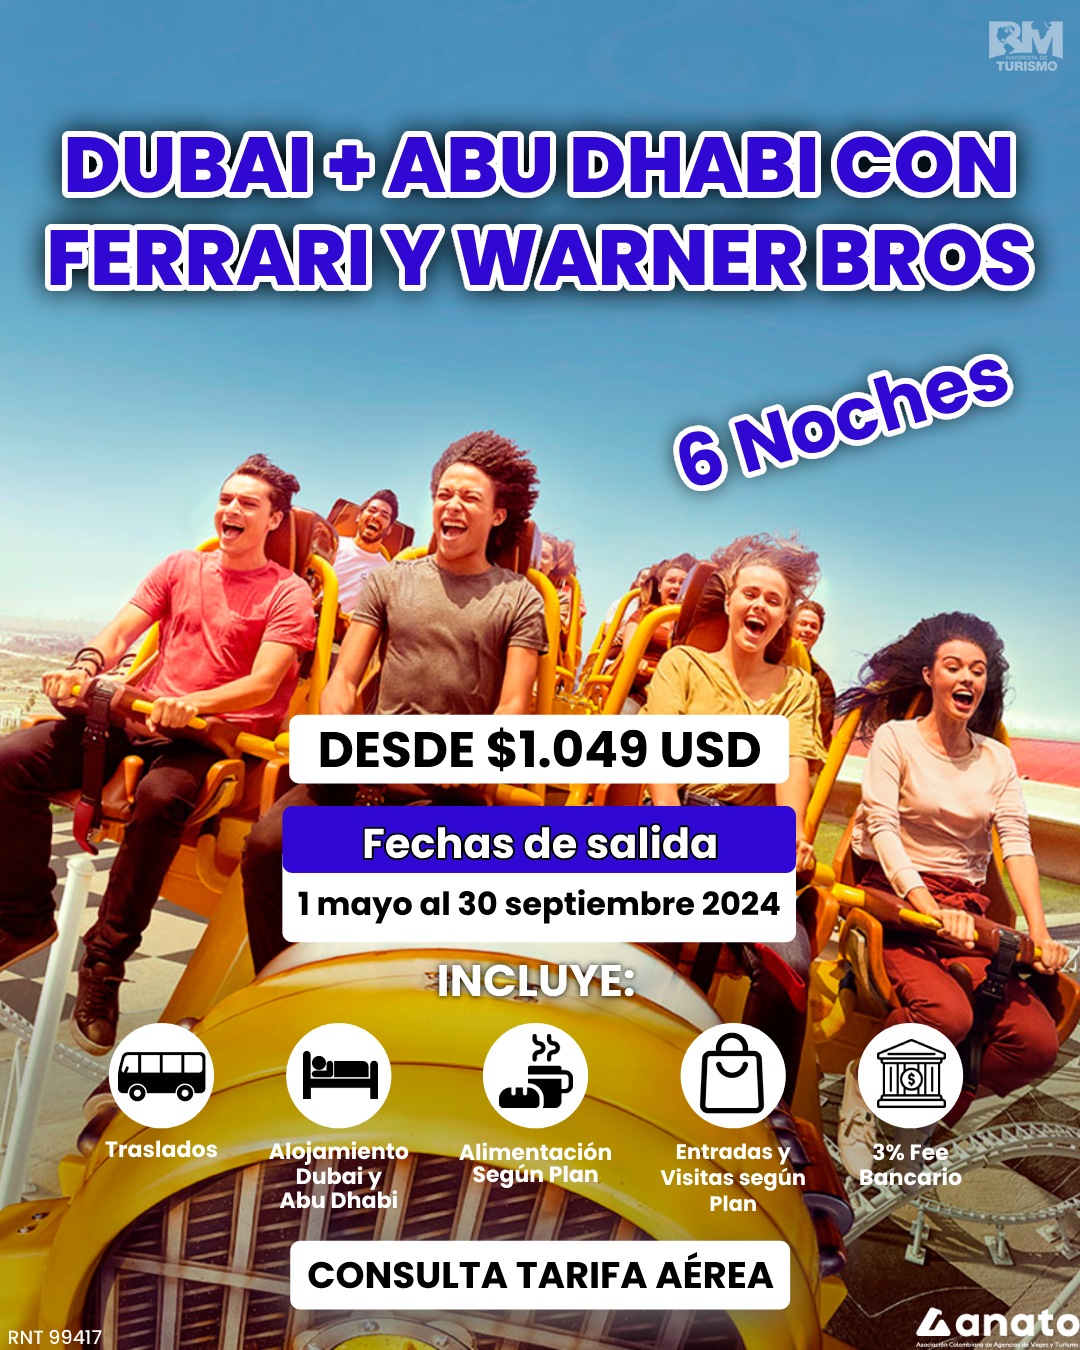 DUBAI + ABU DHABI CON FERRARI Y WANER BROS